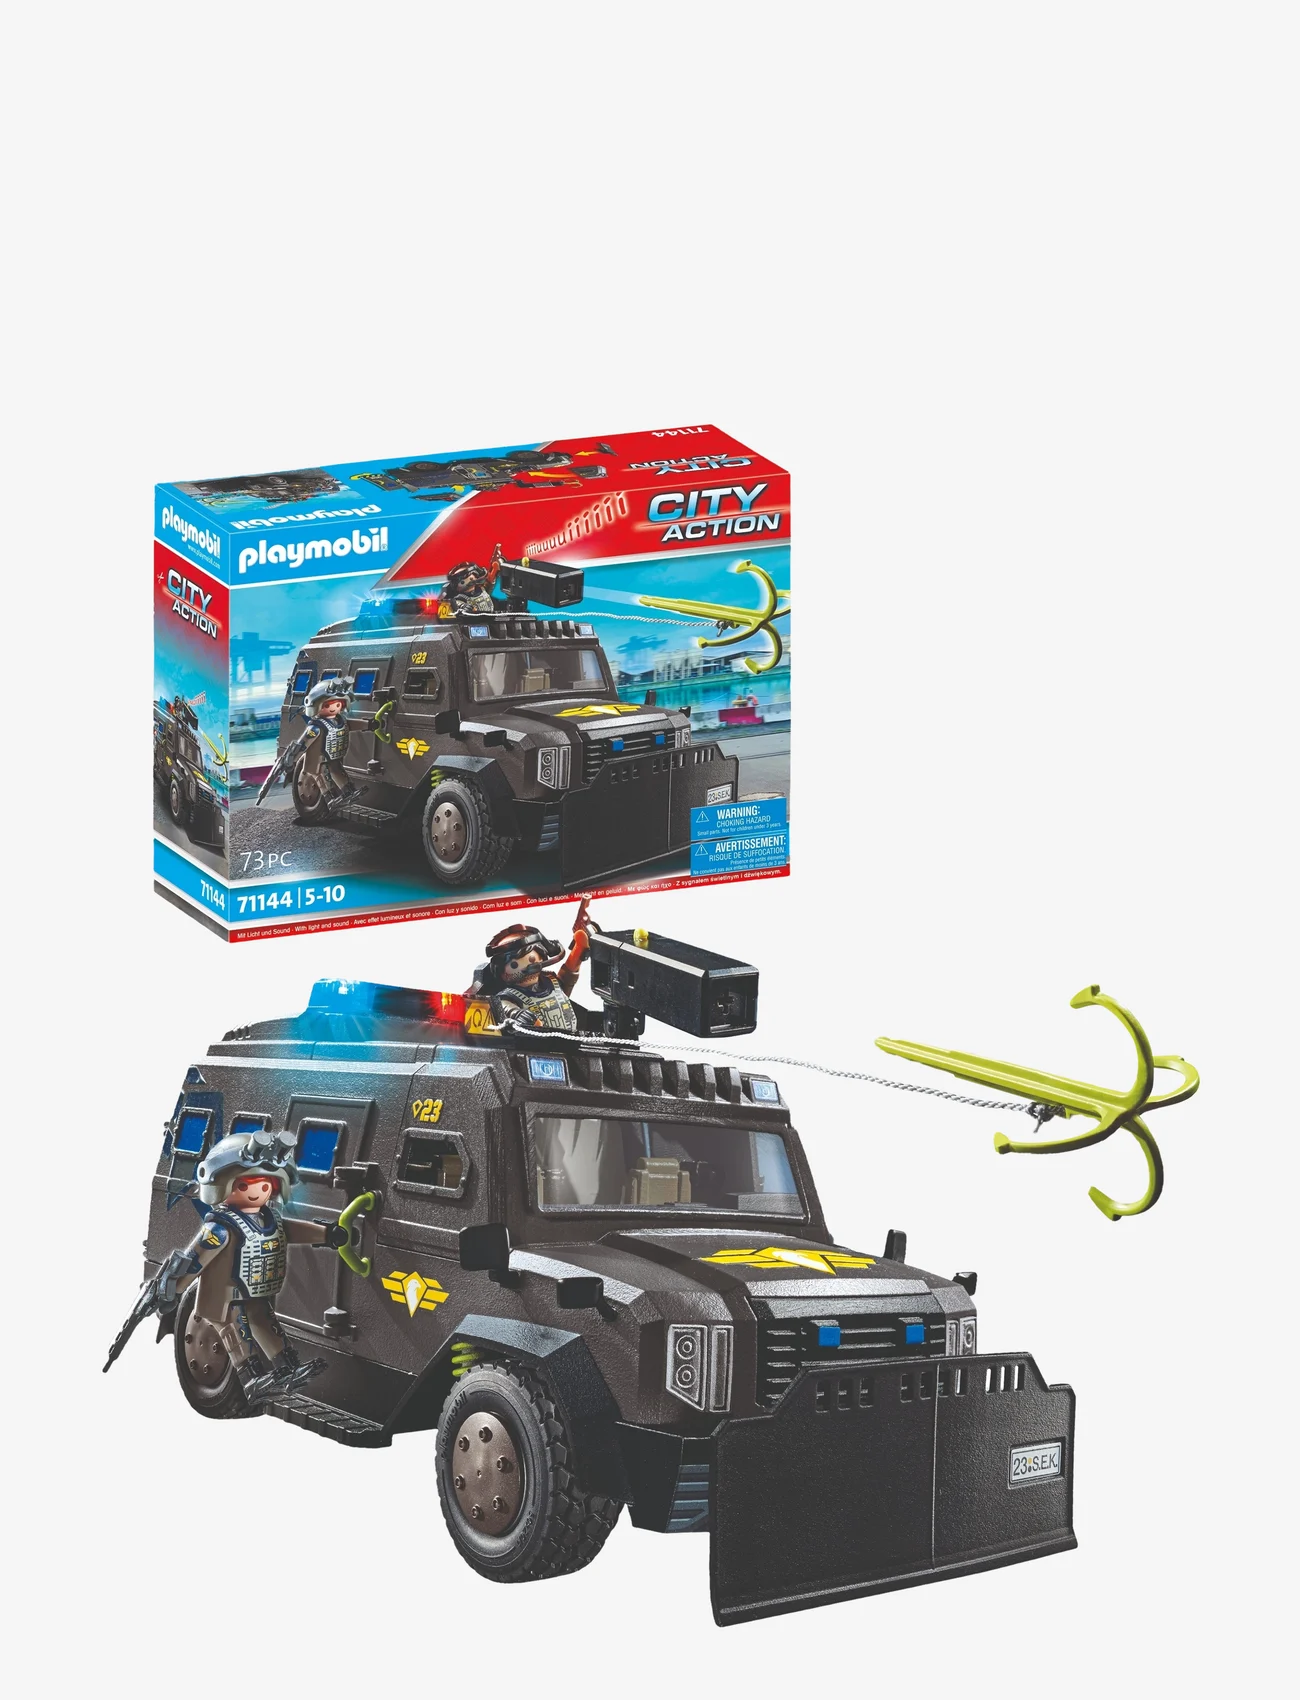 PLAYMOBIL - PLAYMOBIL City Action Tactical Unit - All-Terrain Vehicle - 71144 - playmobil city action - multicolored - 0